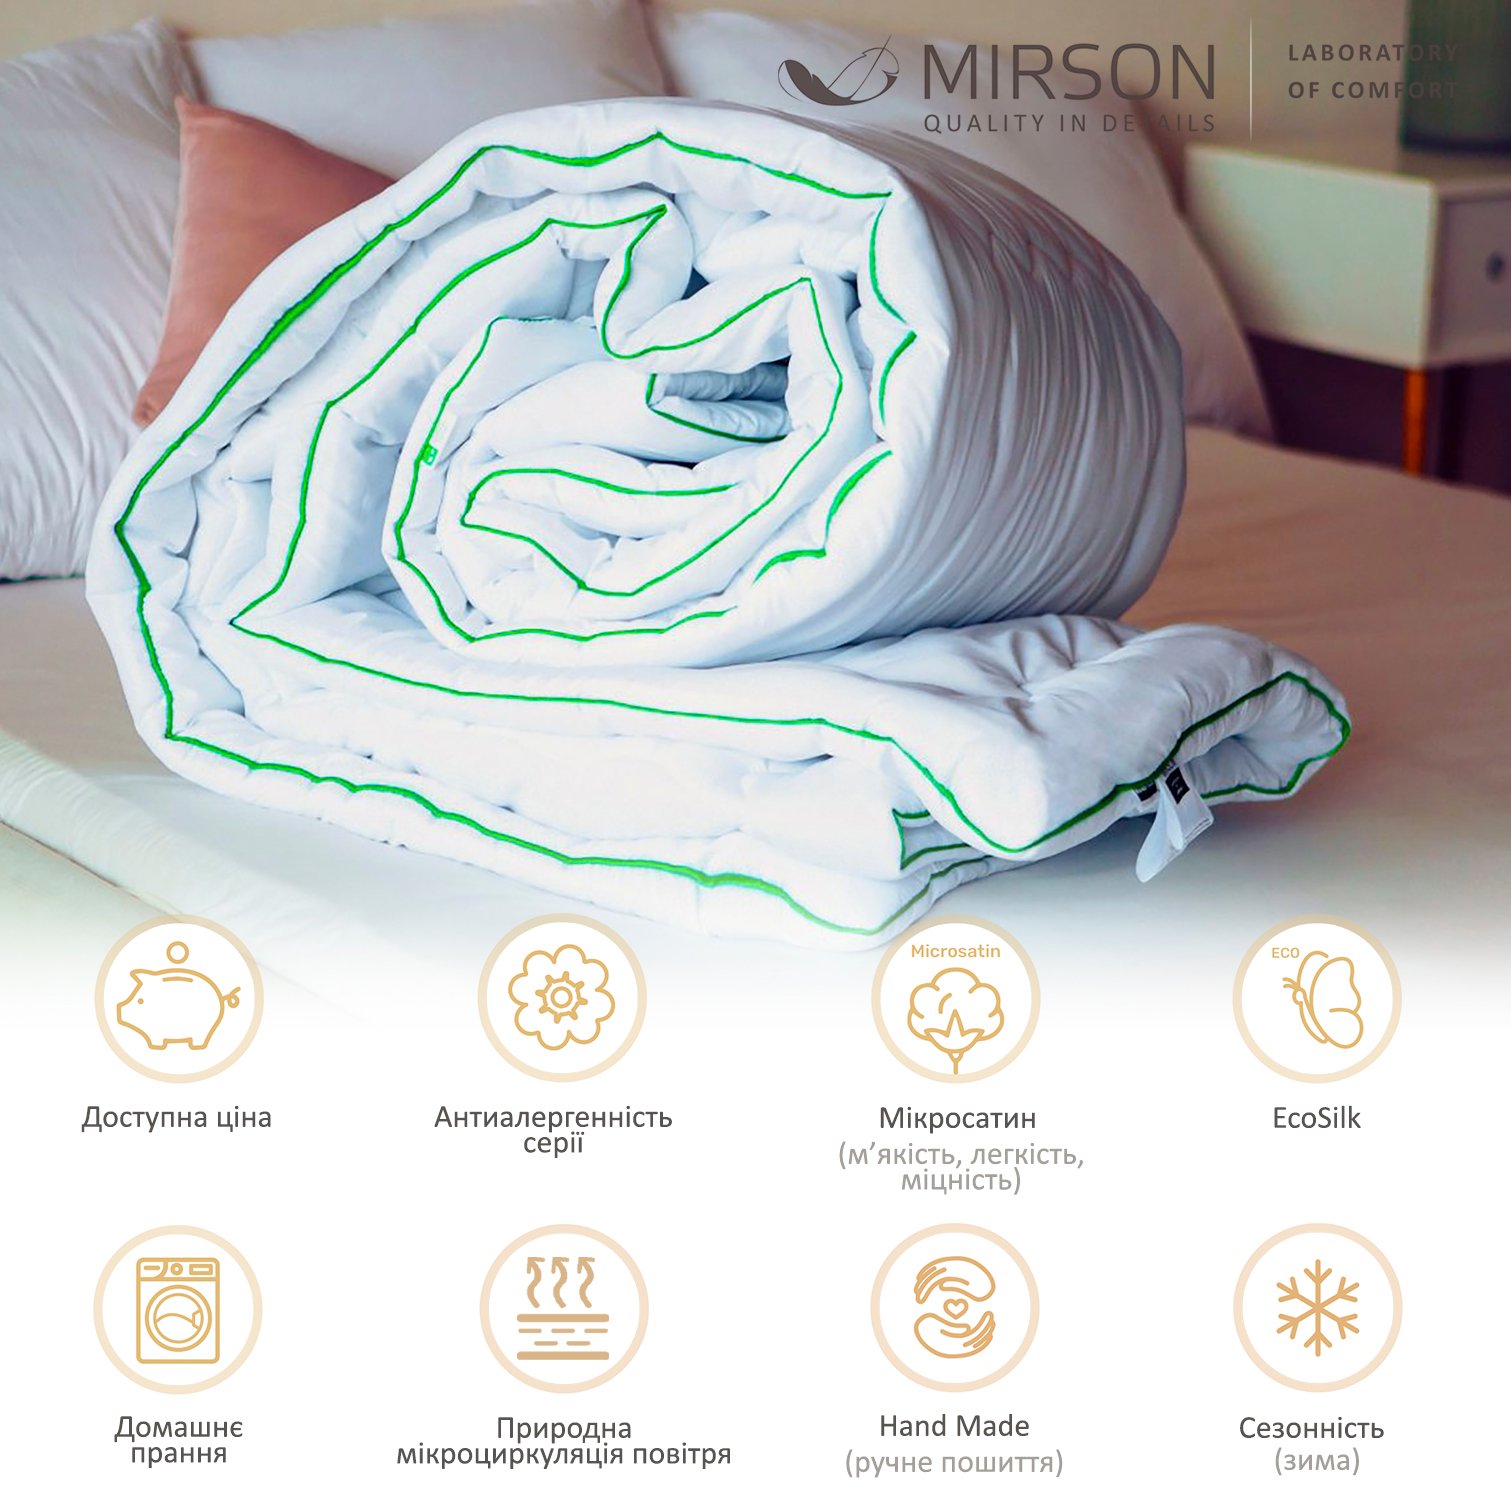 Одеяло антиаллергенное MirSon Eco Hand Made №075, зимнее, 200x220 см, белое (58589860) - фото 5